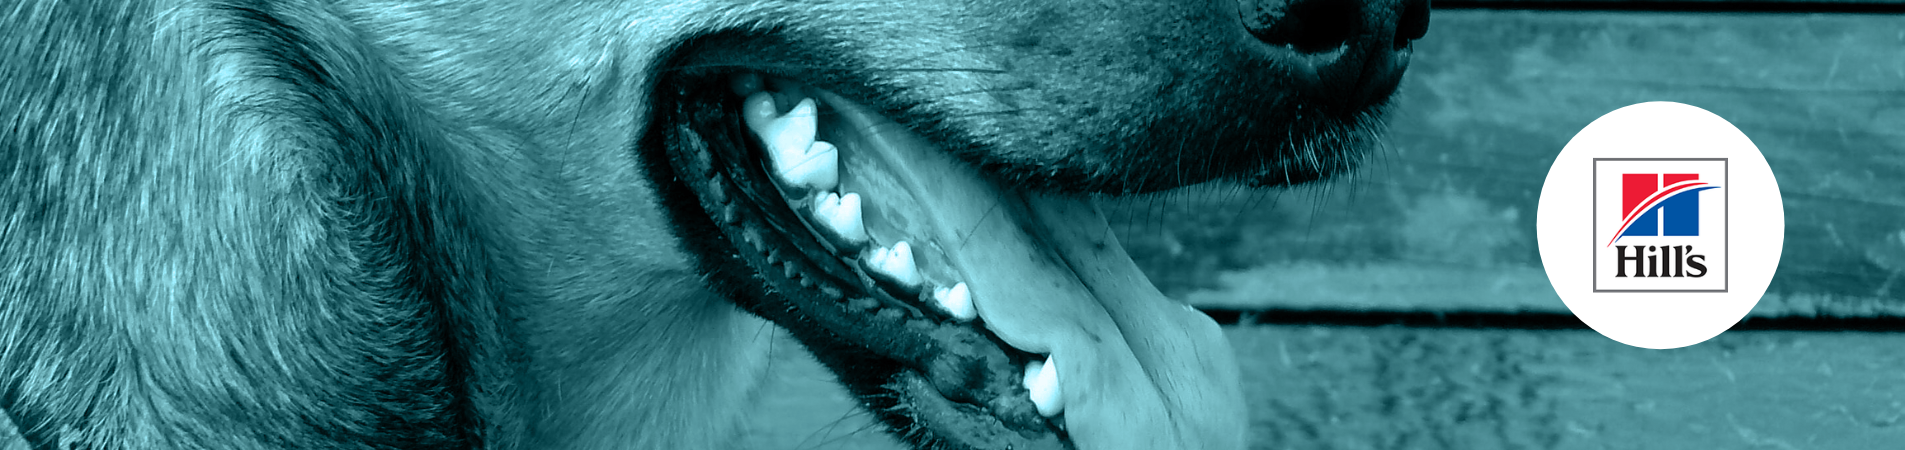 Conseils pour prendre soin de la santé bucco-dentaire de votre animal